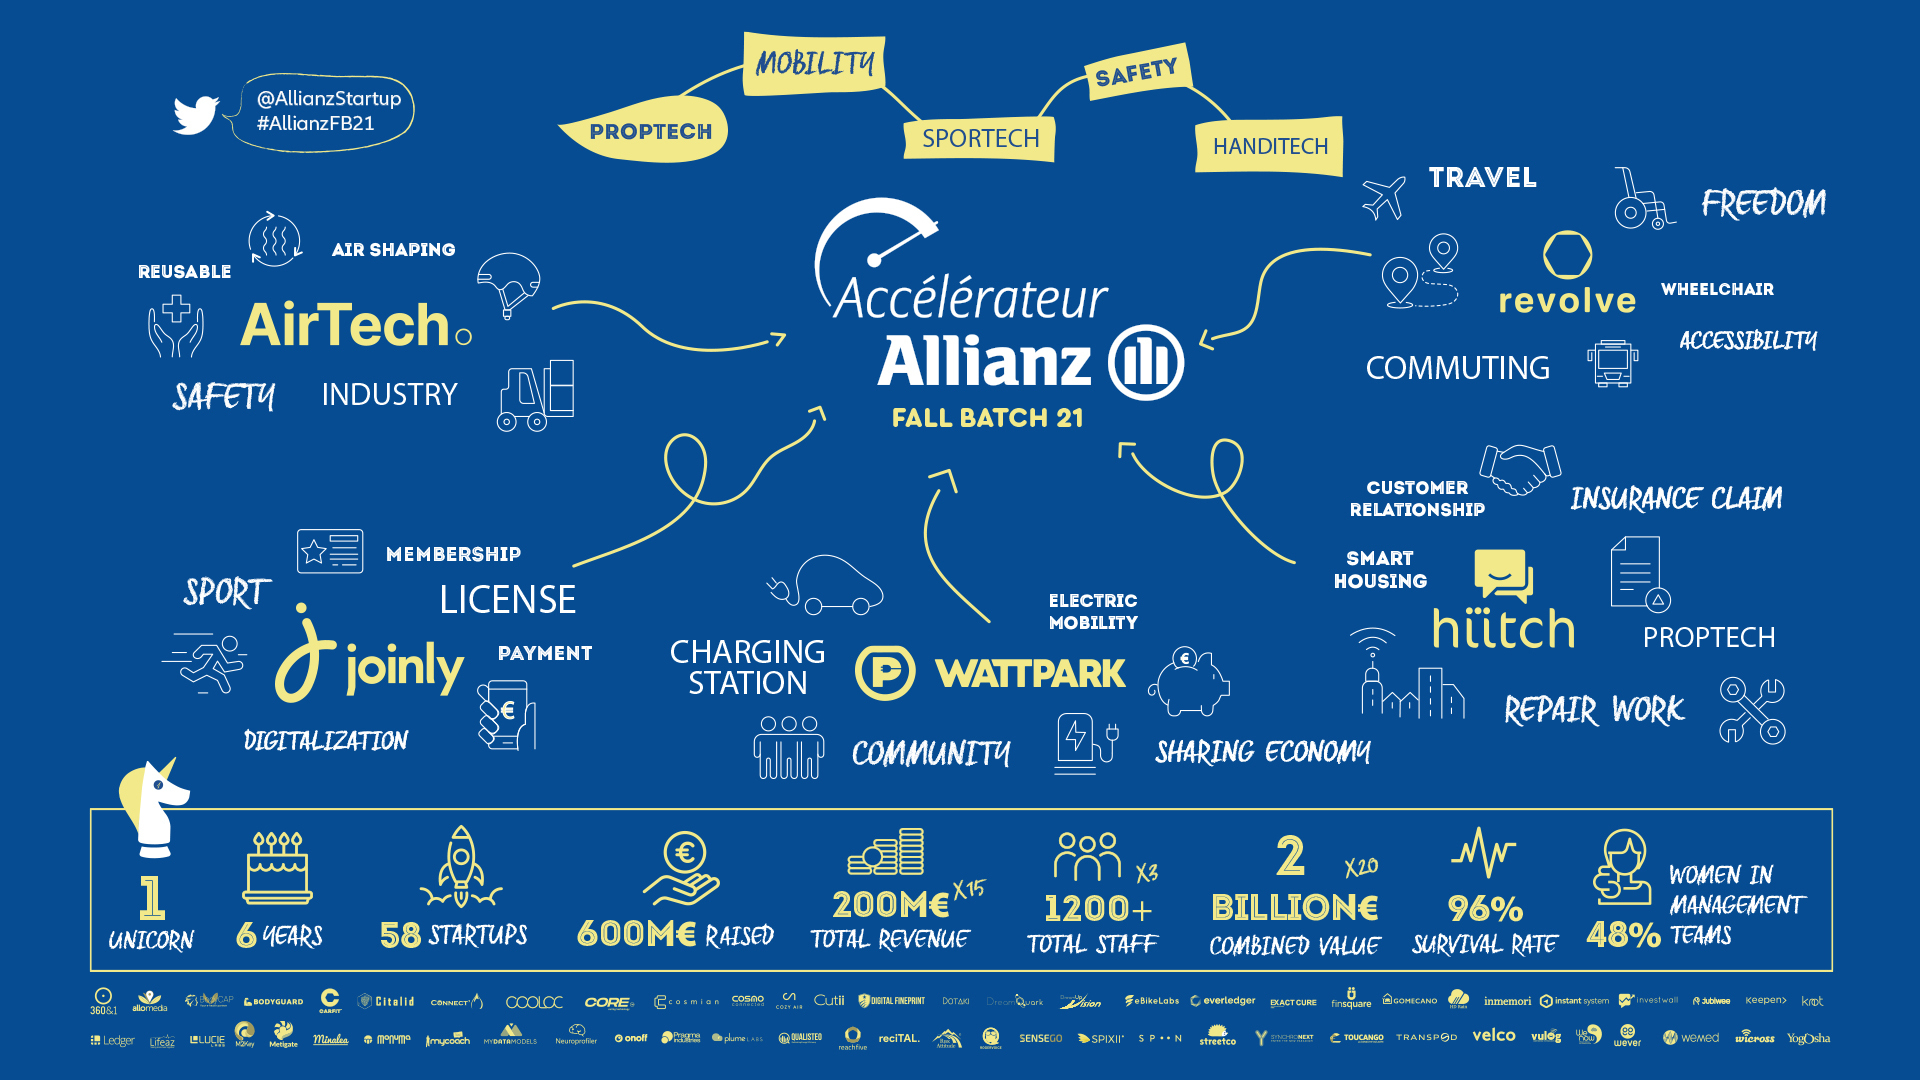 L’accélérateur d’Allianz France, un dispositif puissant pour développer les startups depuis 5 ans